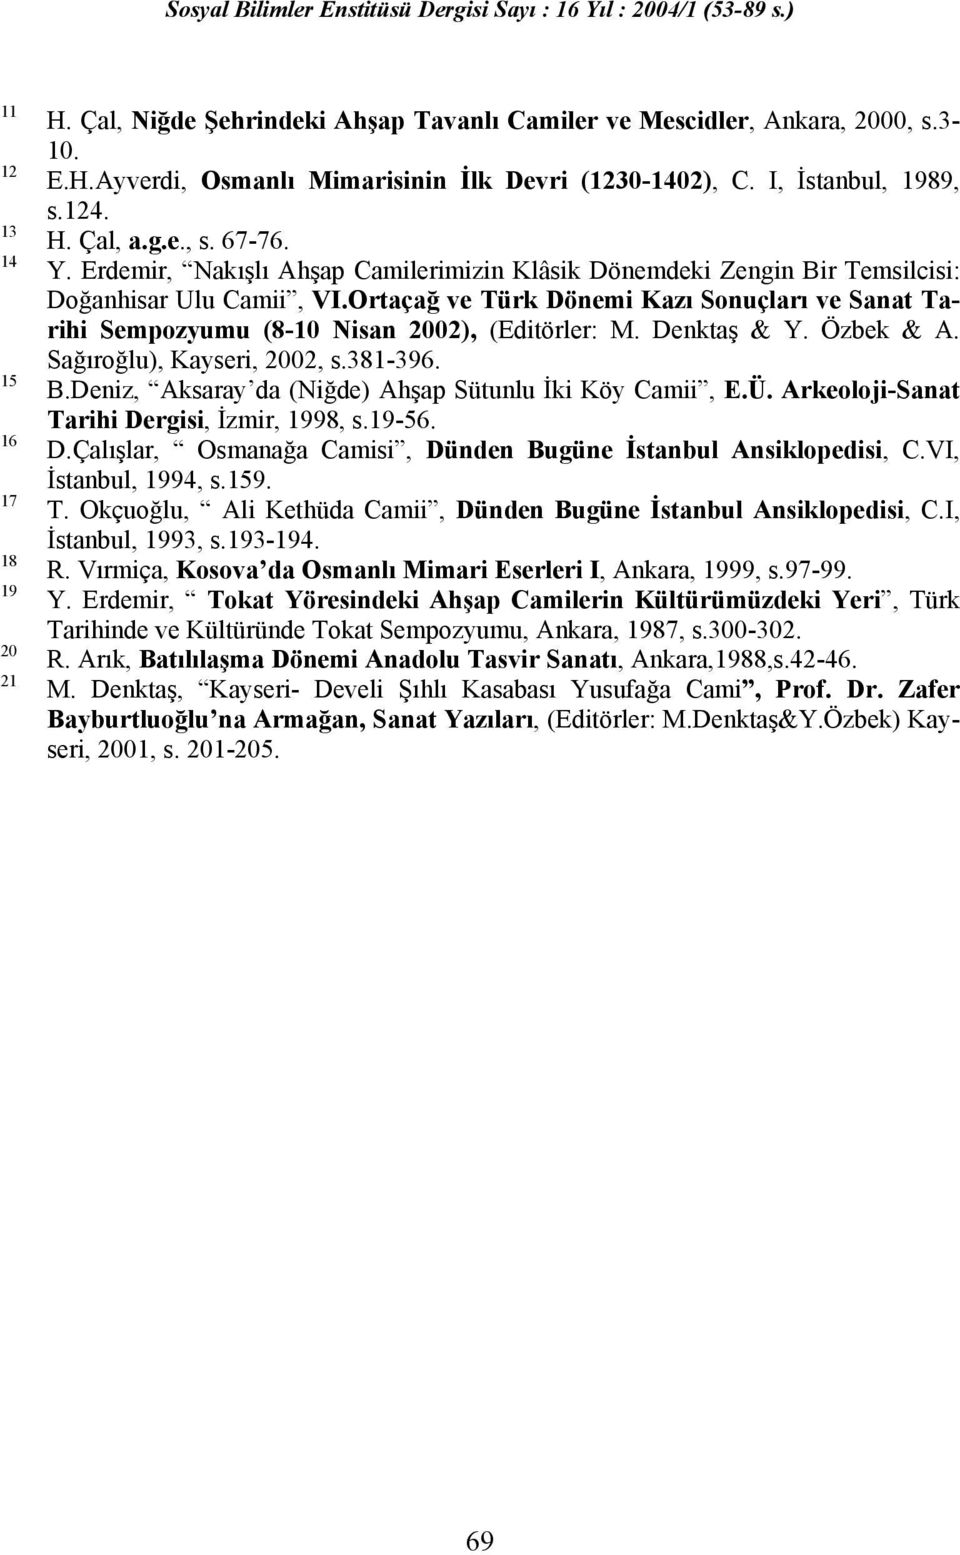 Ortaçağ ve Türk Dönemi Kazı Sonuçları ve Sanat Tarihi Sempozyumu (8-10 Nisan 2002), (Editörler: M. Denktaş & Y. Özbek & A. Sağıroğlu), Kayseri, 2002, s.381-396. B.